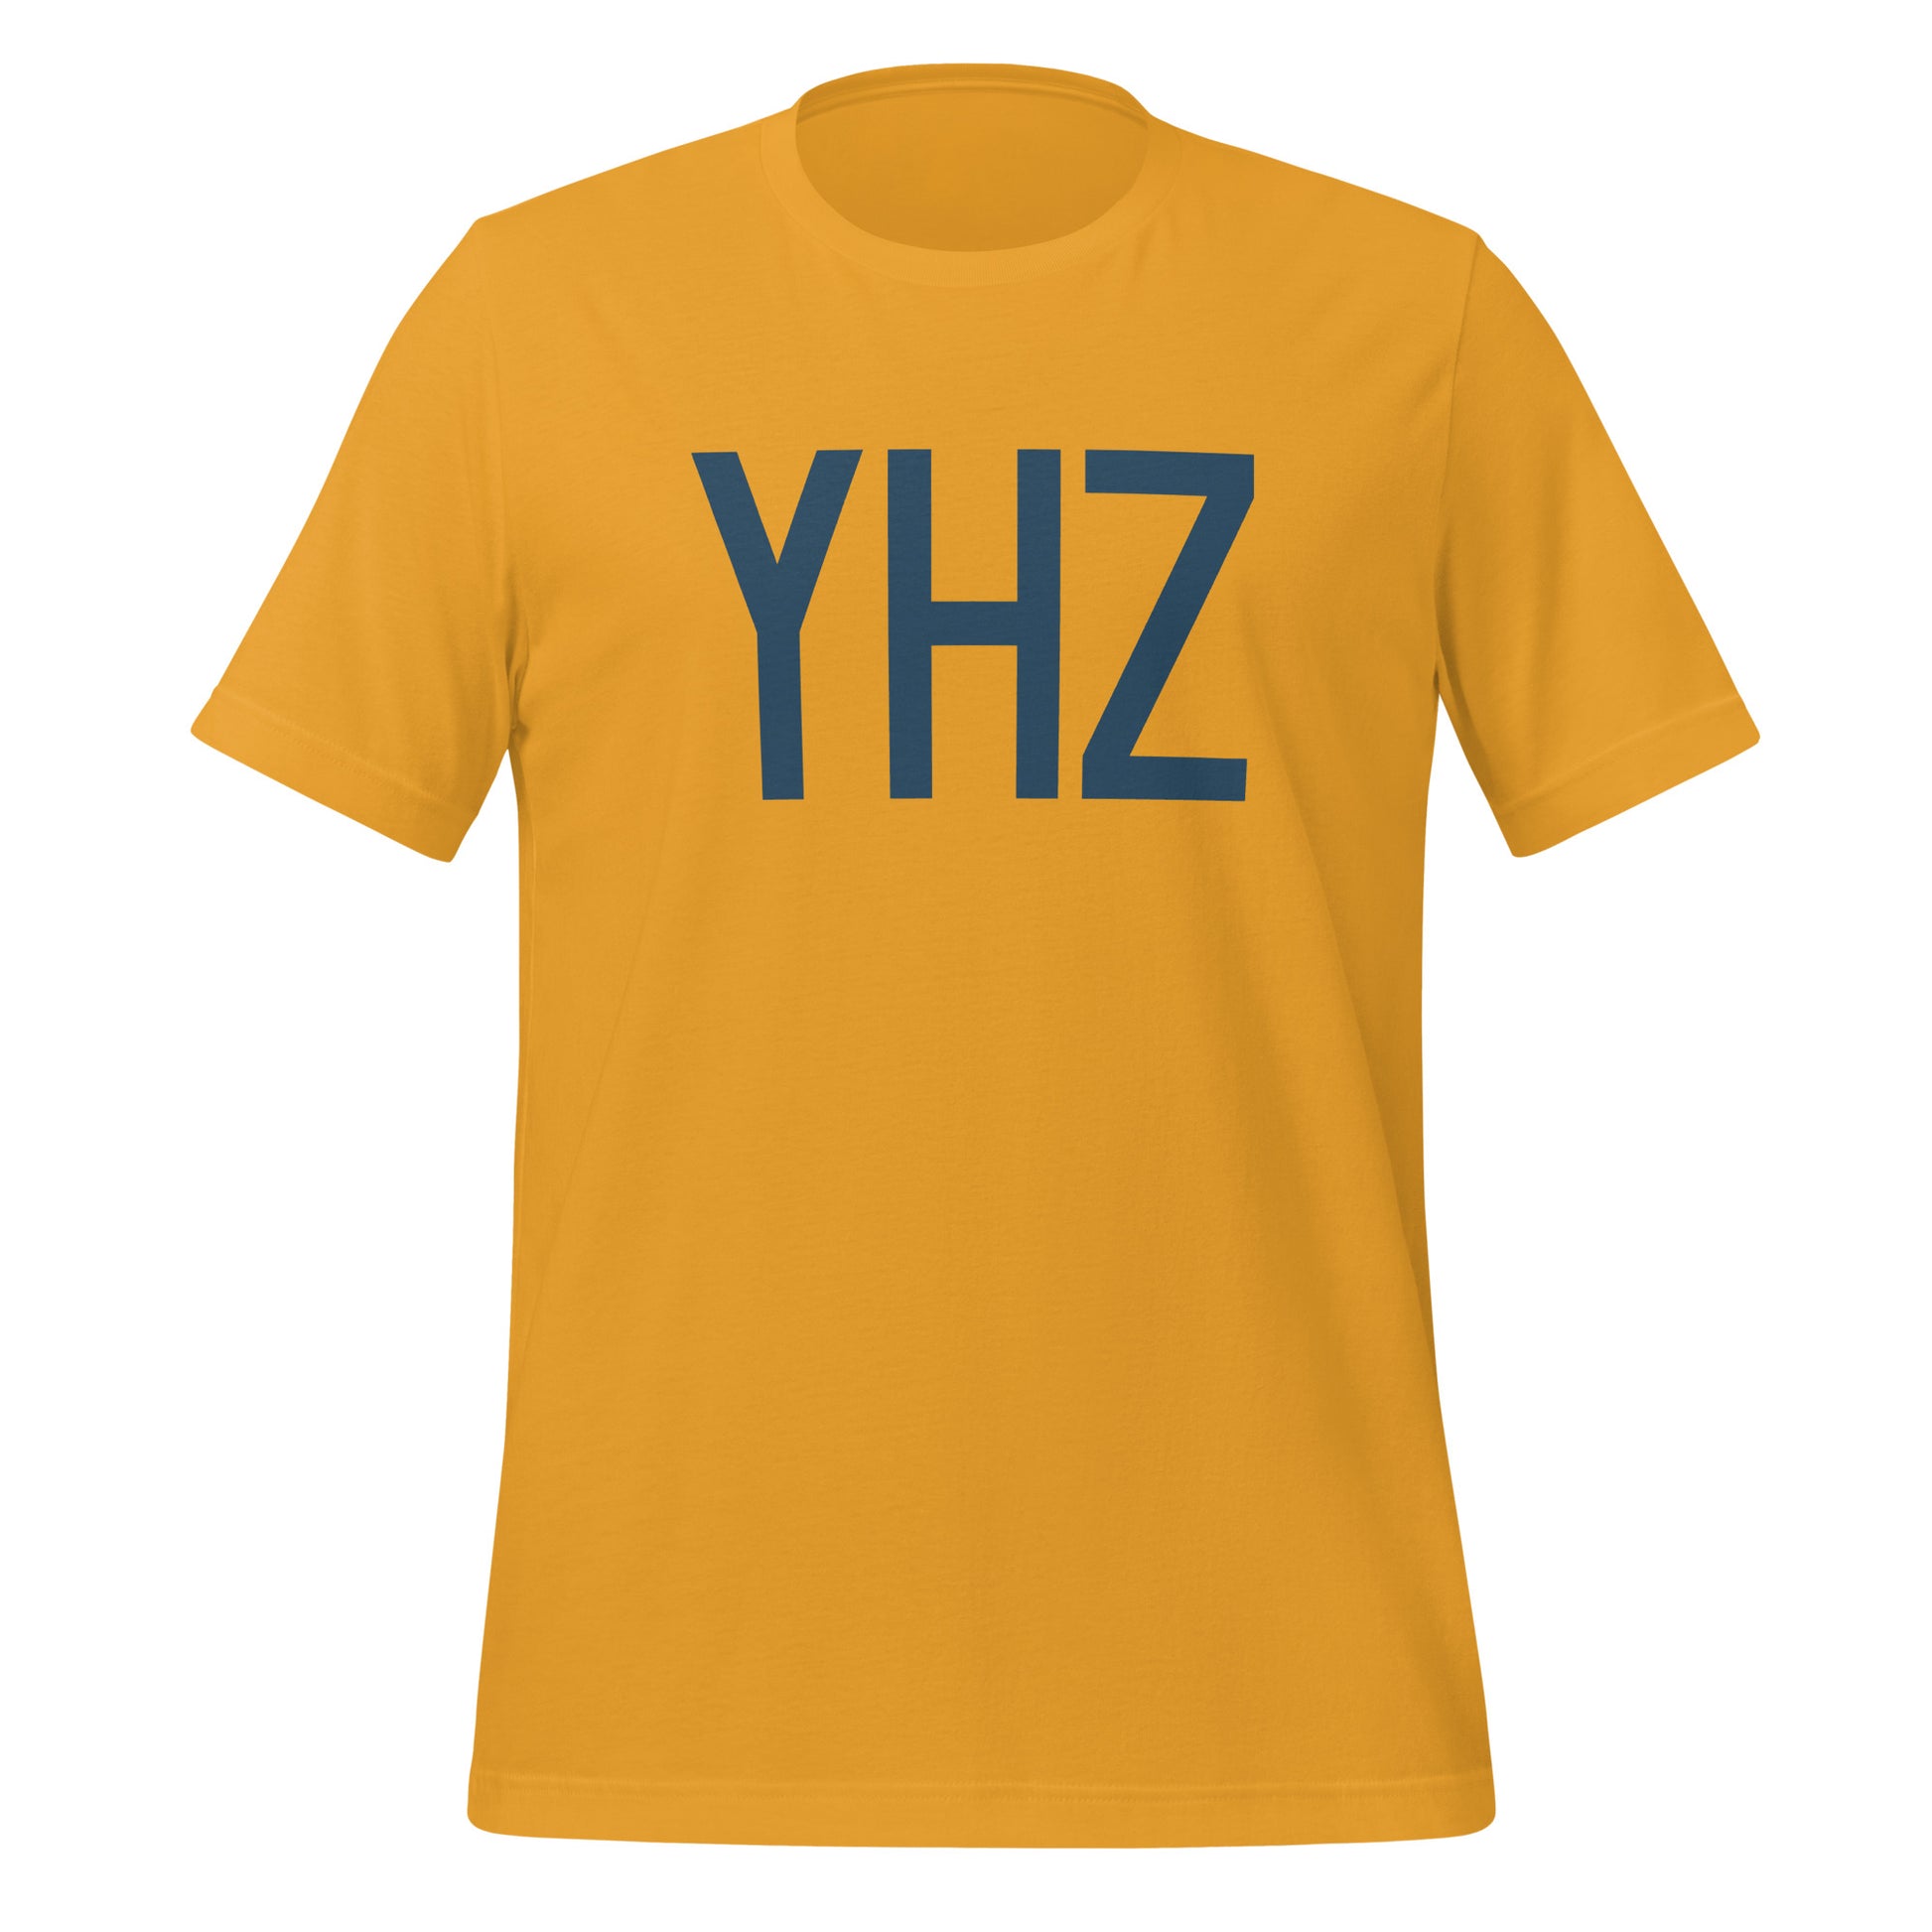 Aviation Lover Unisex T-Shirt - Blue Graphic • YHZ Halifax • YHM Designs - Image 06